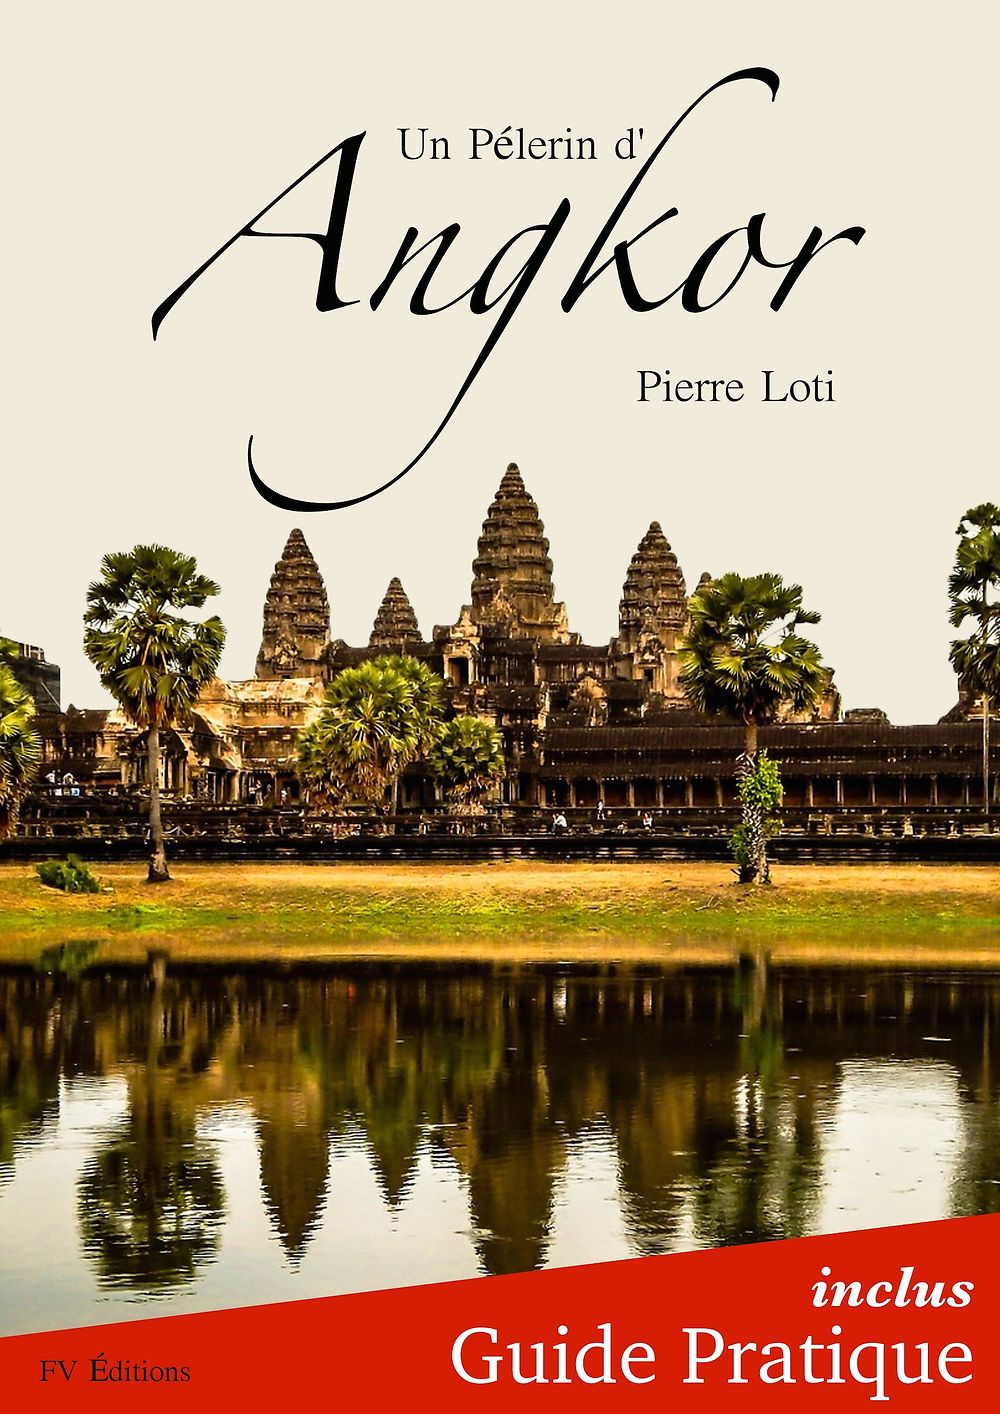 Re: Cap sur Angkor: Bande Annonce (carnets de voyage) - ledoc66